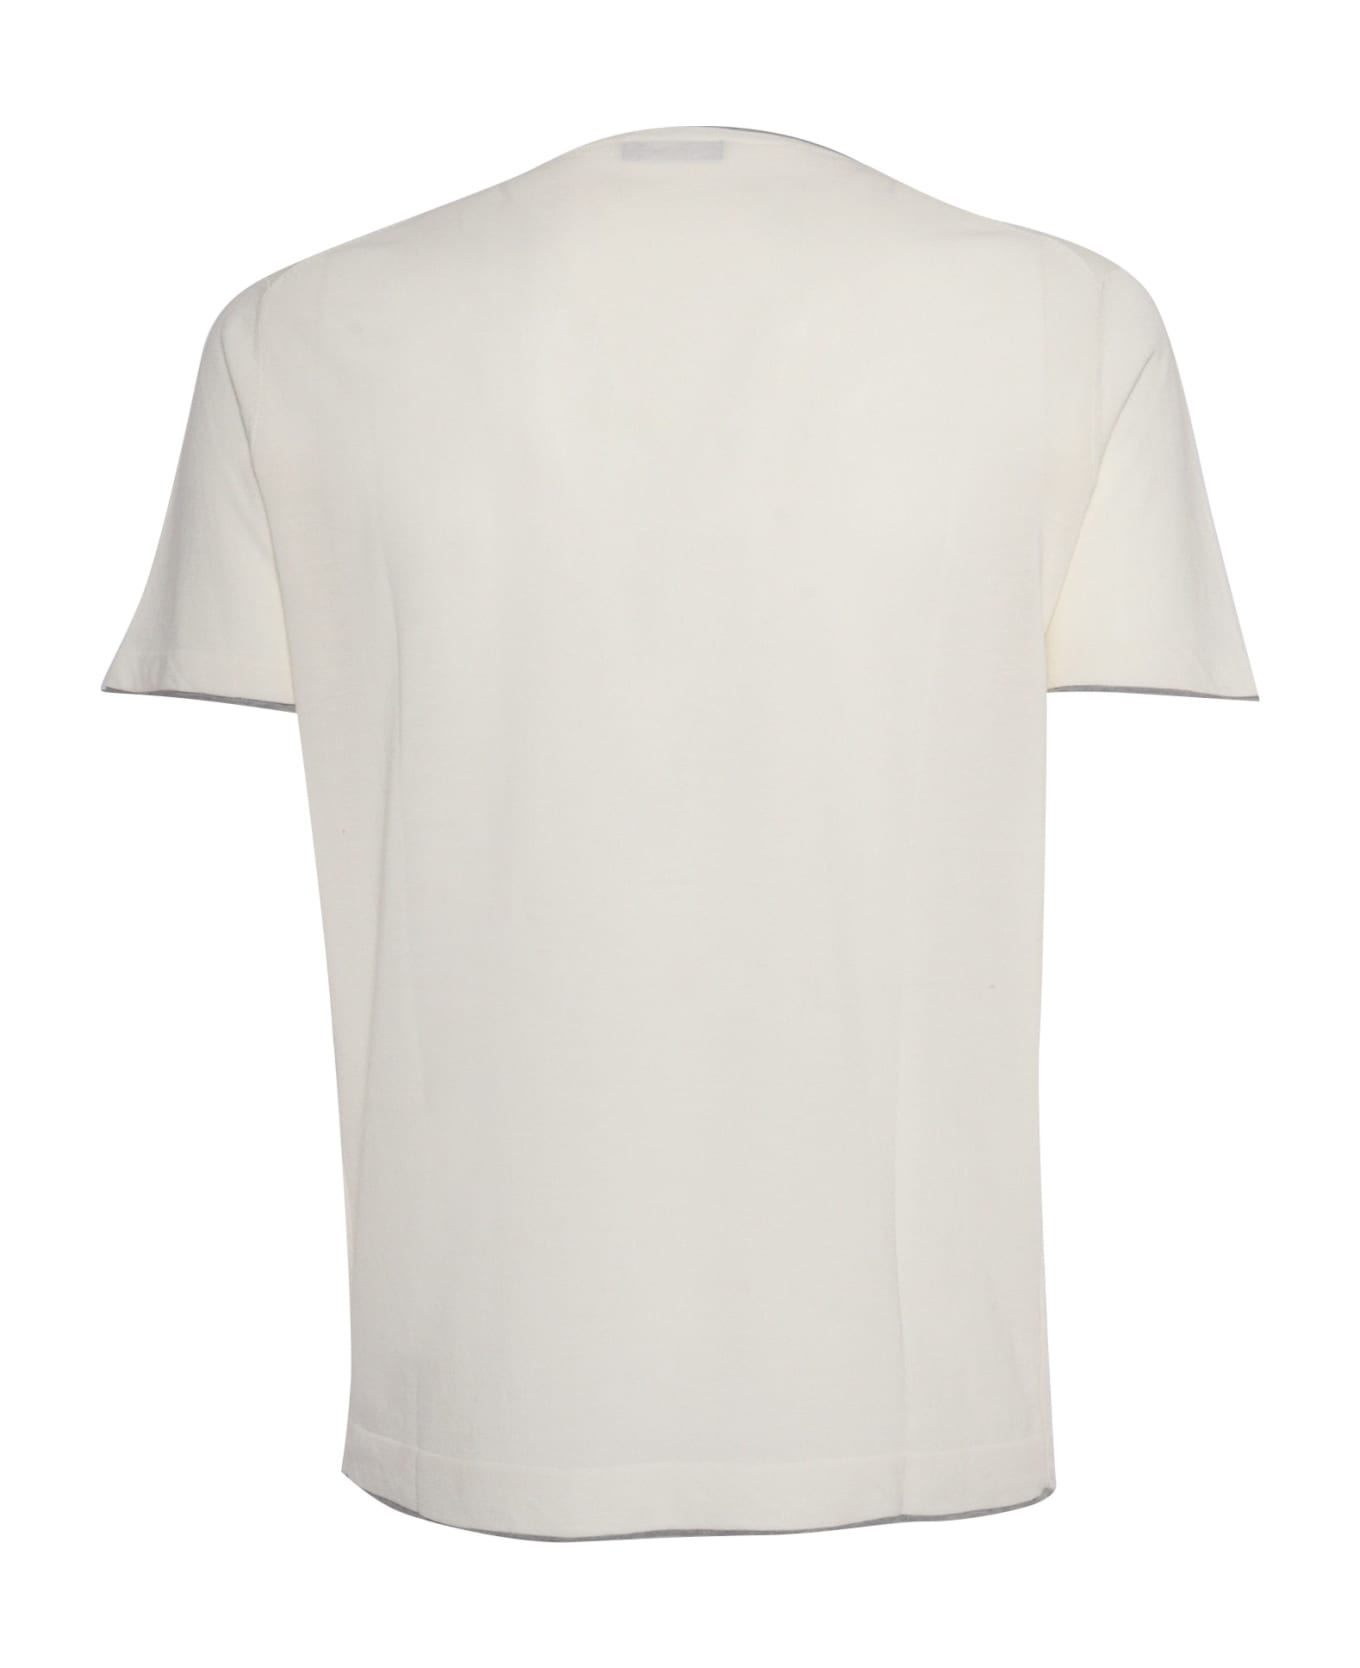 L.B.M. 1911 Gray Revo T-shirt - WHITE